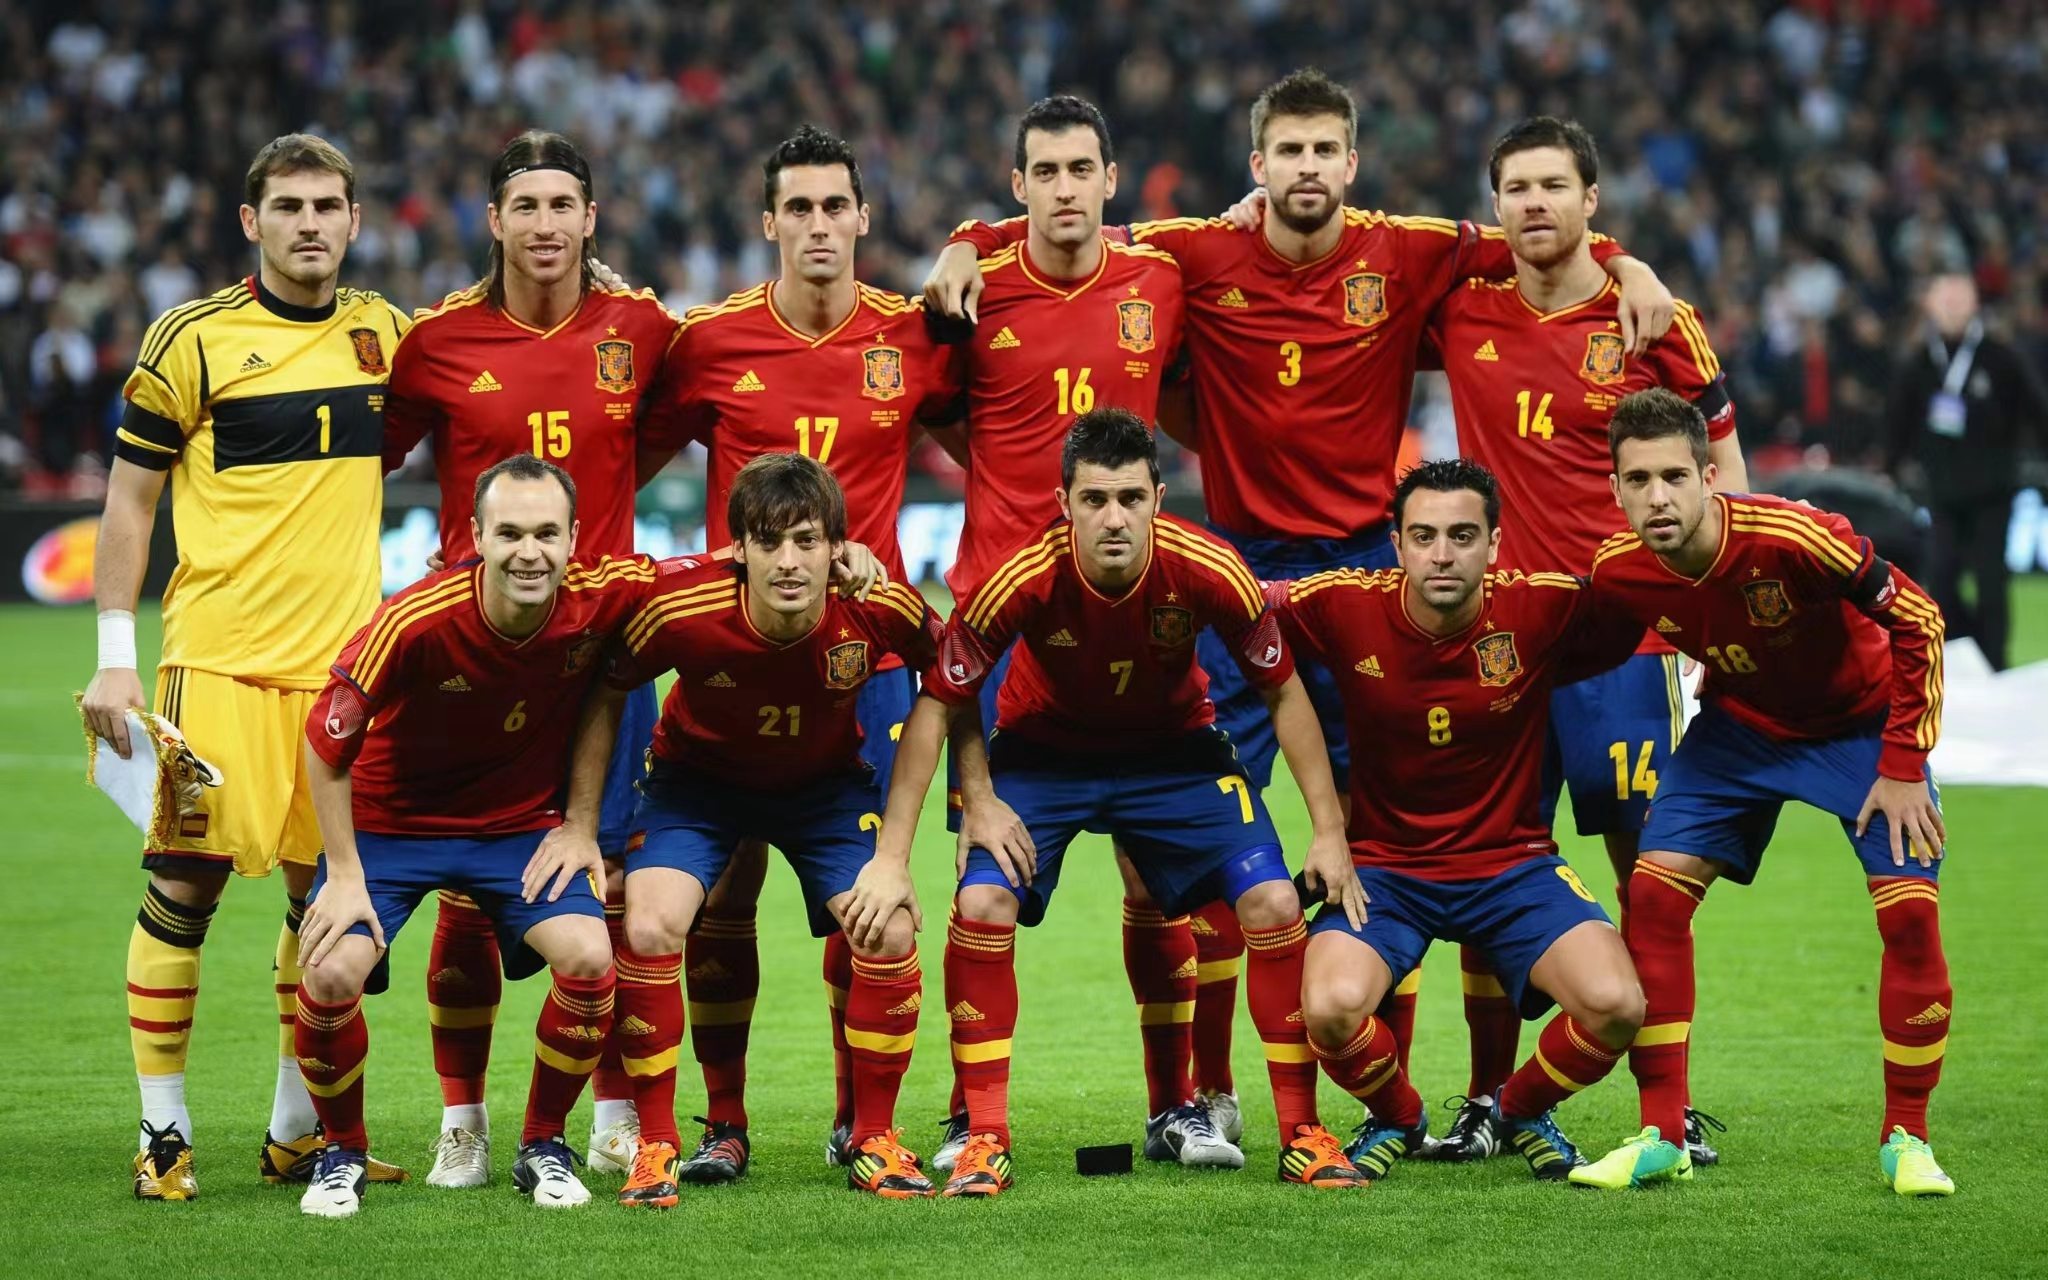 西班牙足球队世界杯输球淘汰后主帅的面对很大争议